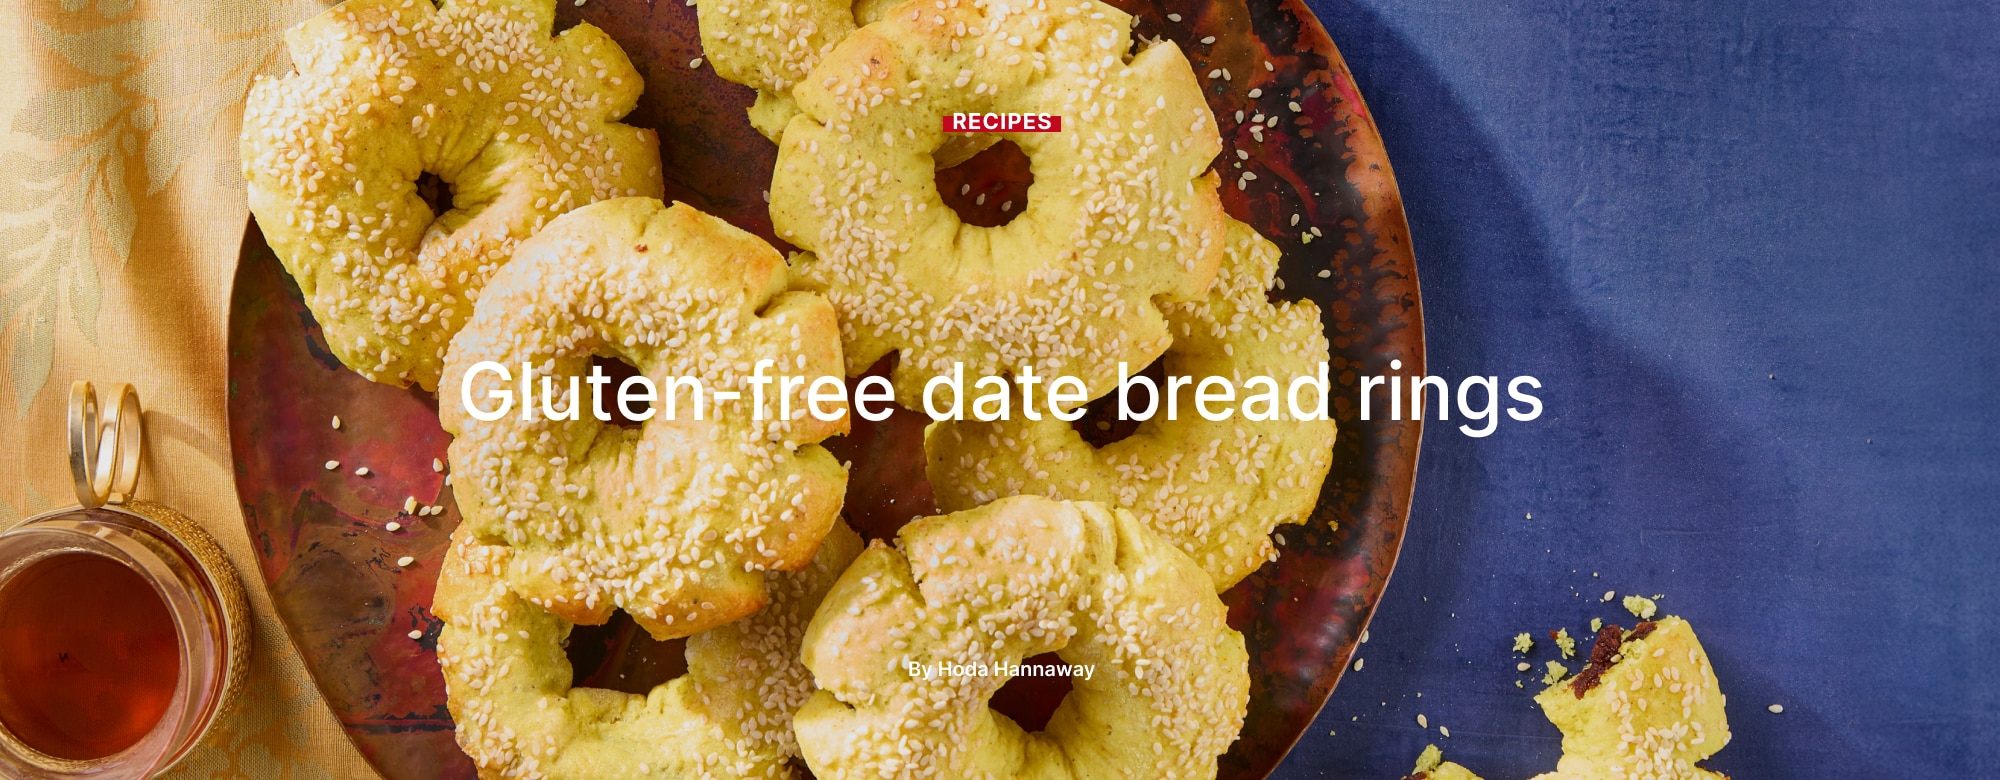 Gluten-free date bread rings